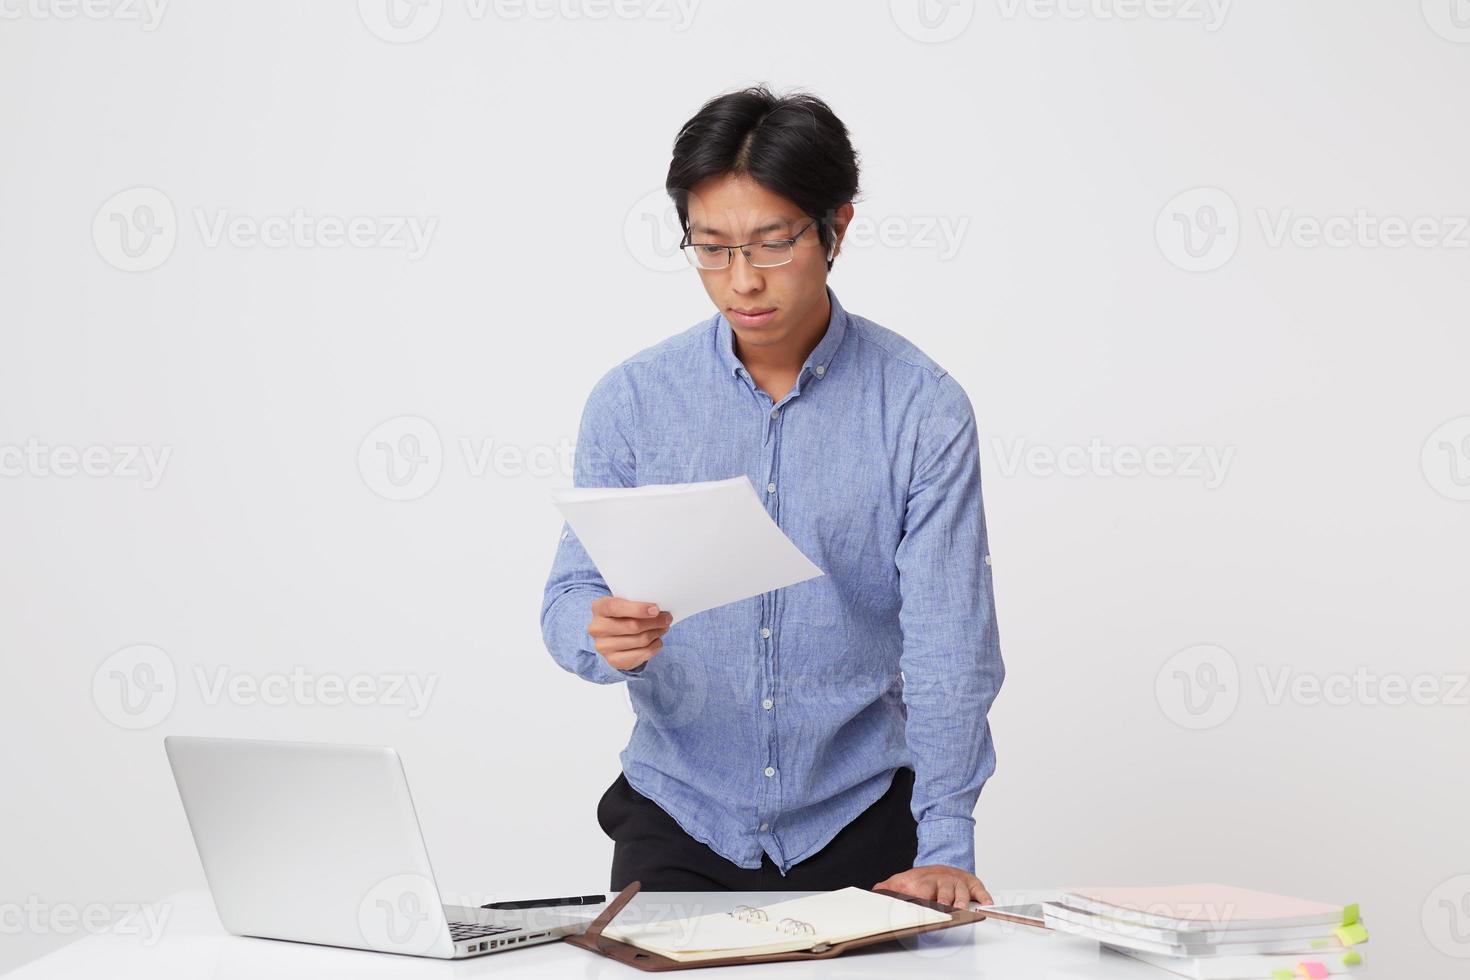 koncentrerad asiatisk ung affärsman i glasögon med bärbar dator och hörlurar för videokommunikation som arbetar med dokument över vit bakgrund foto